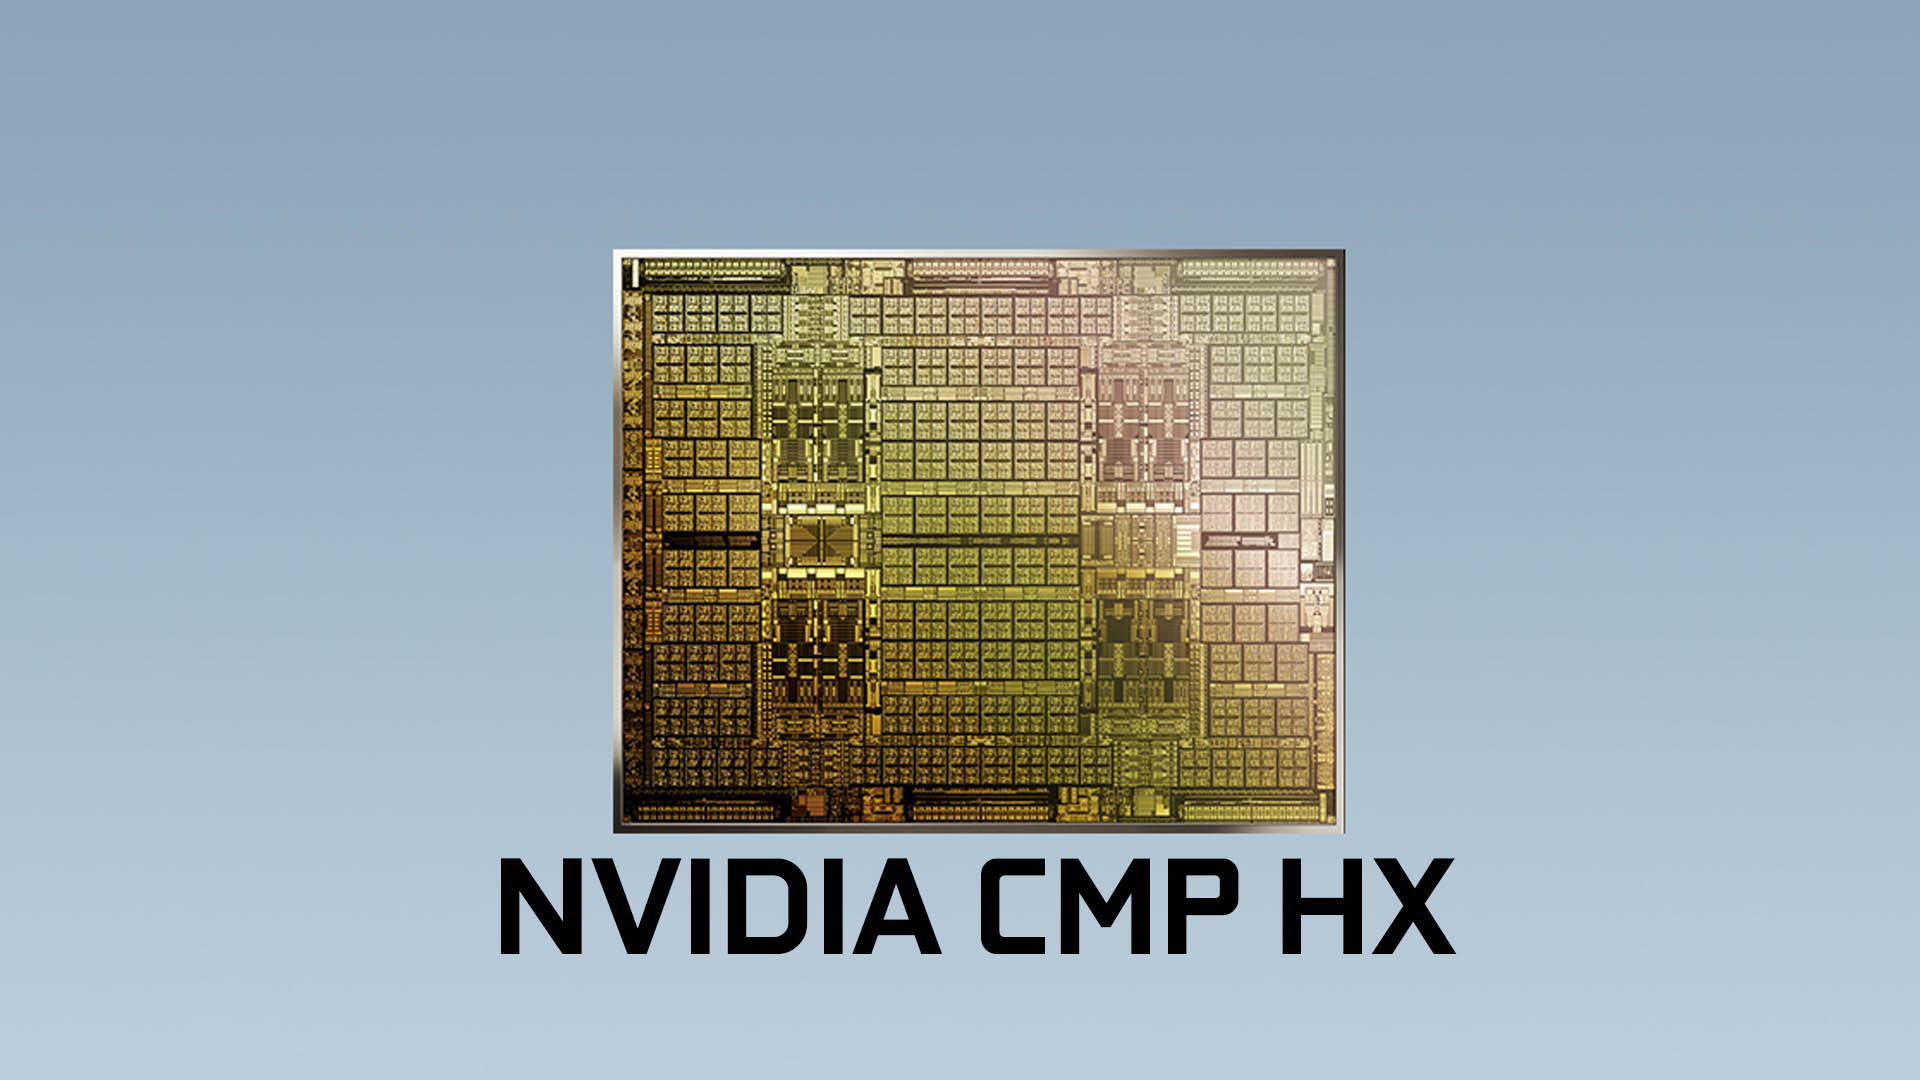 マイニング専用機 NVIDIA CMPシリーズが発表